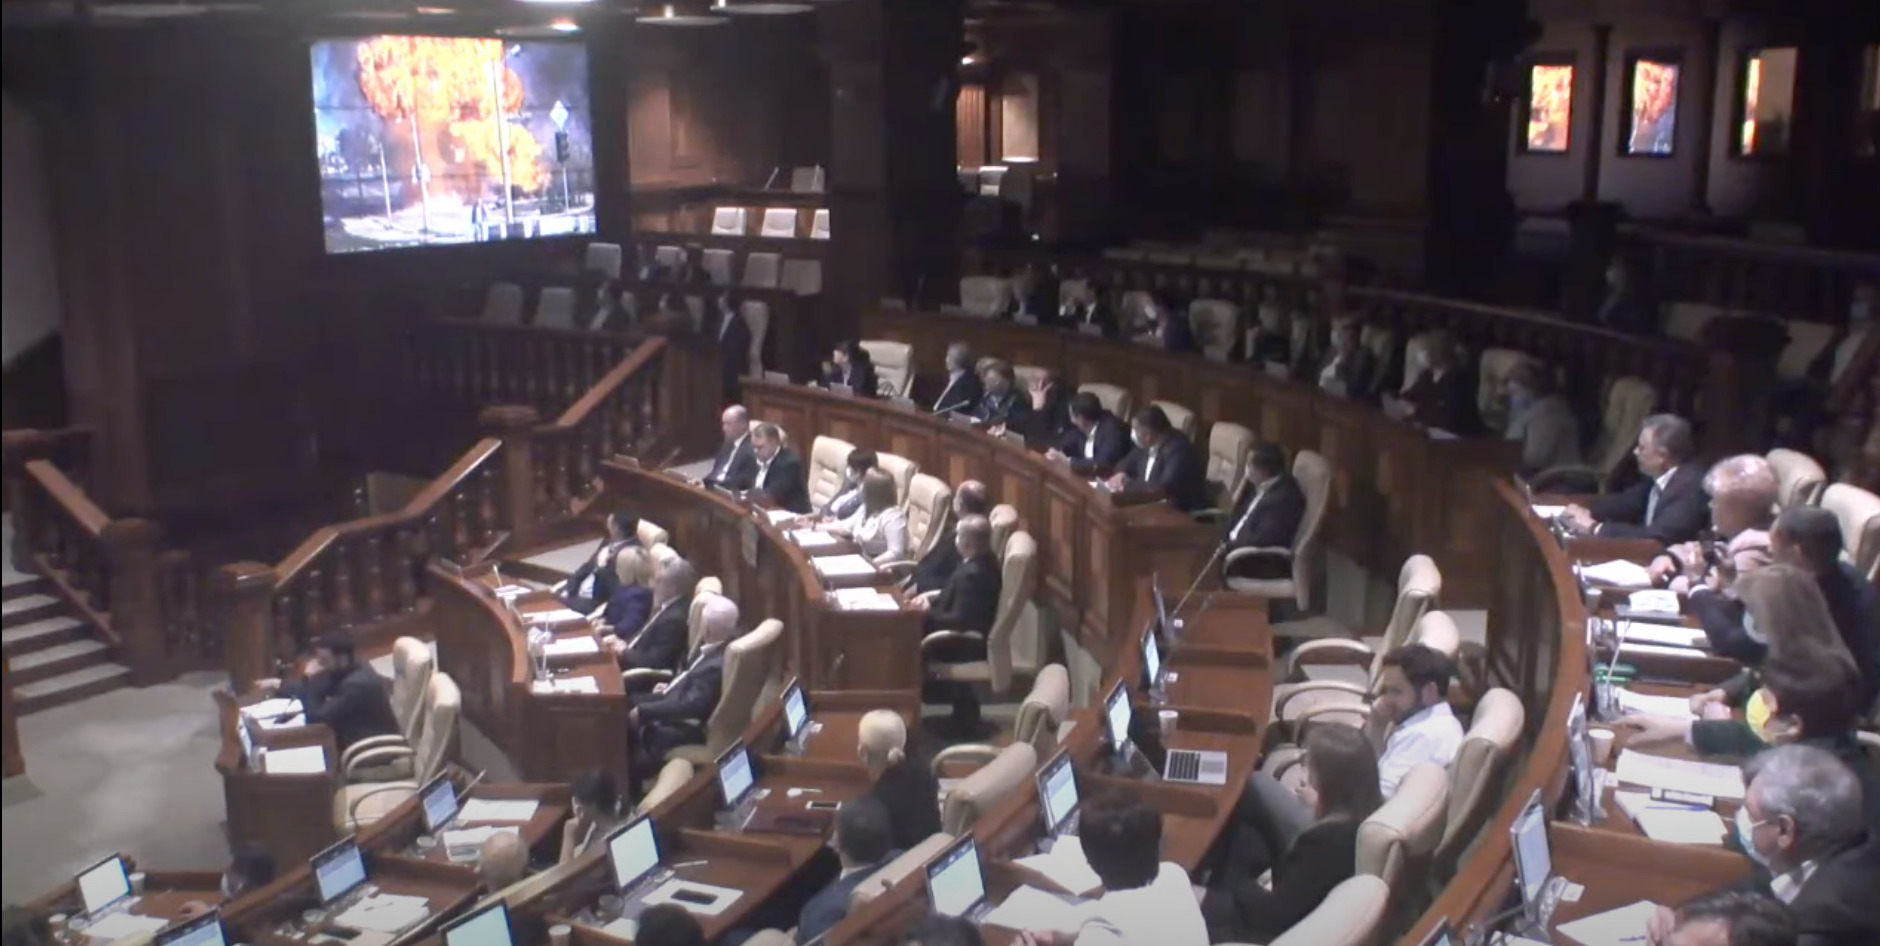 (ВИДЕО) В парламенте Молдовы показали фотографии из Бучи. Депутаты смотрели их под звук сирен